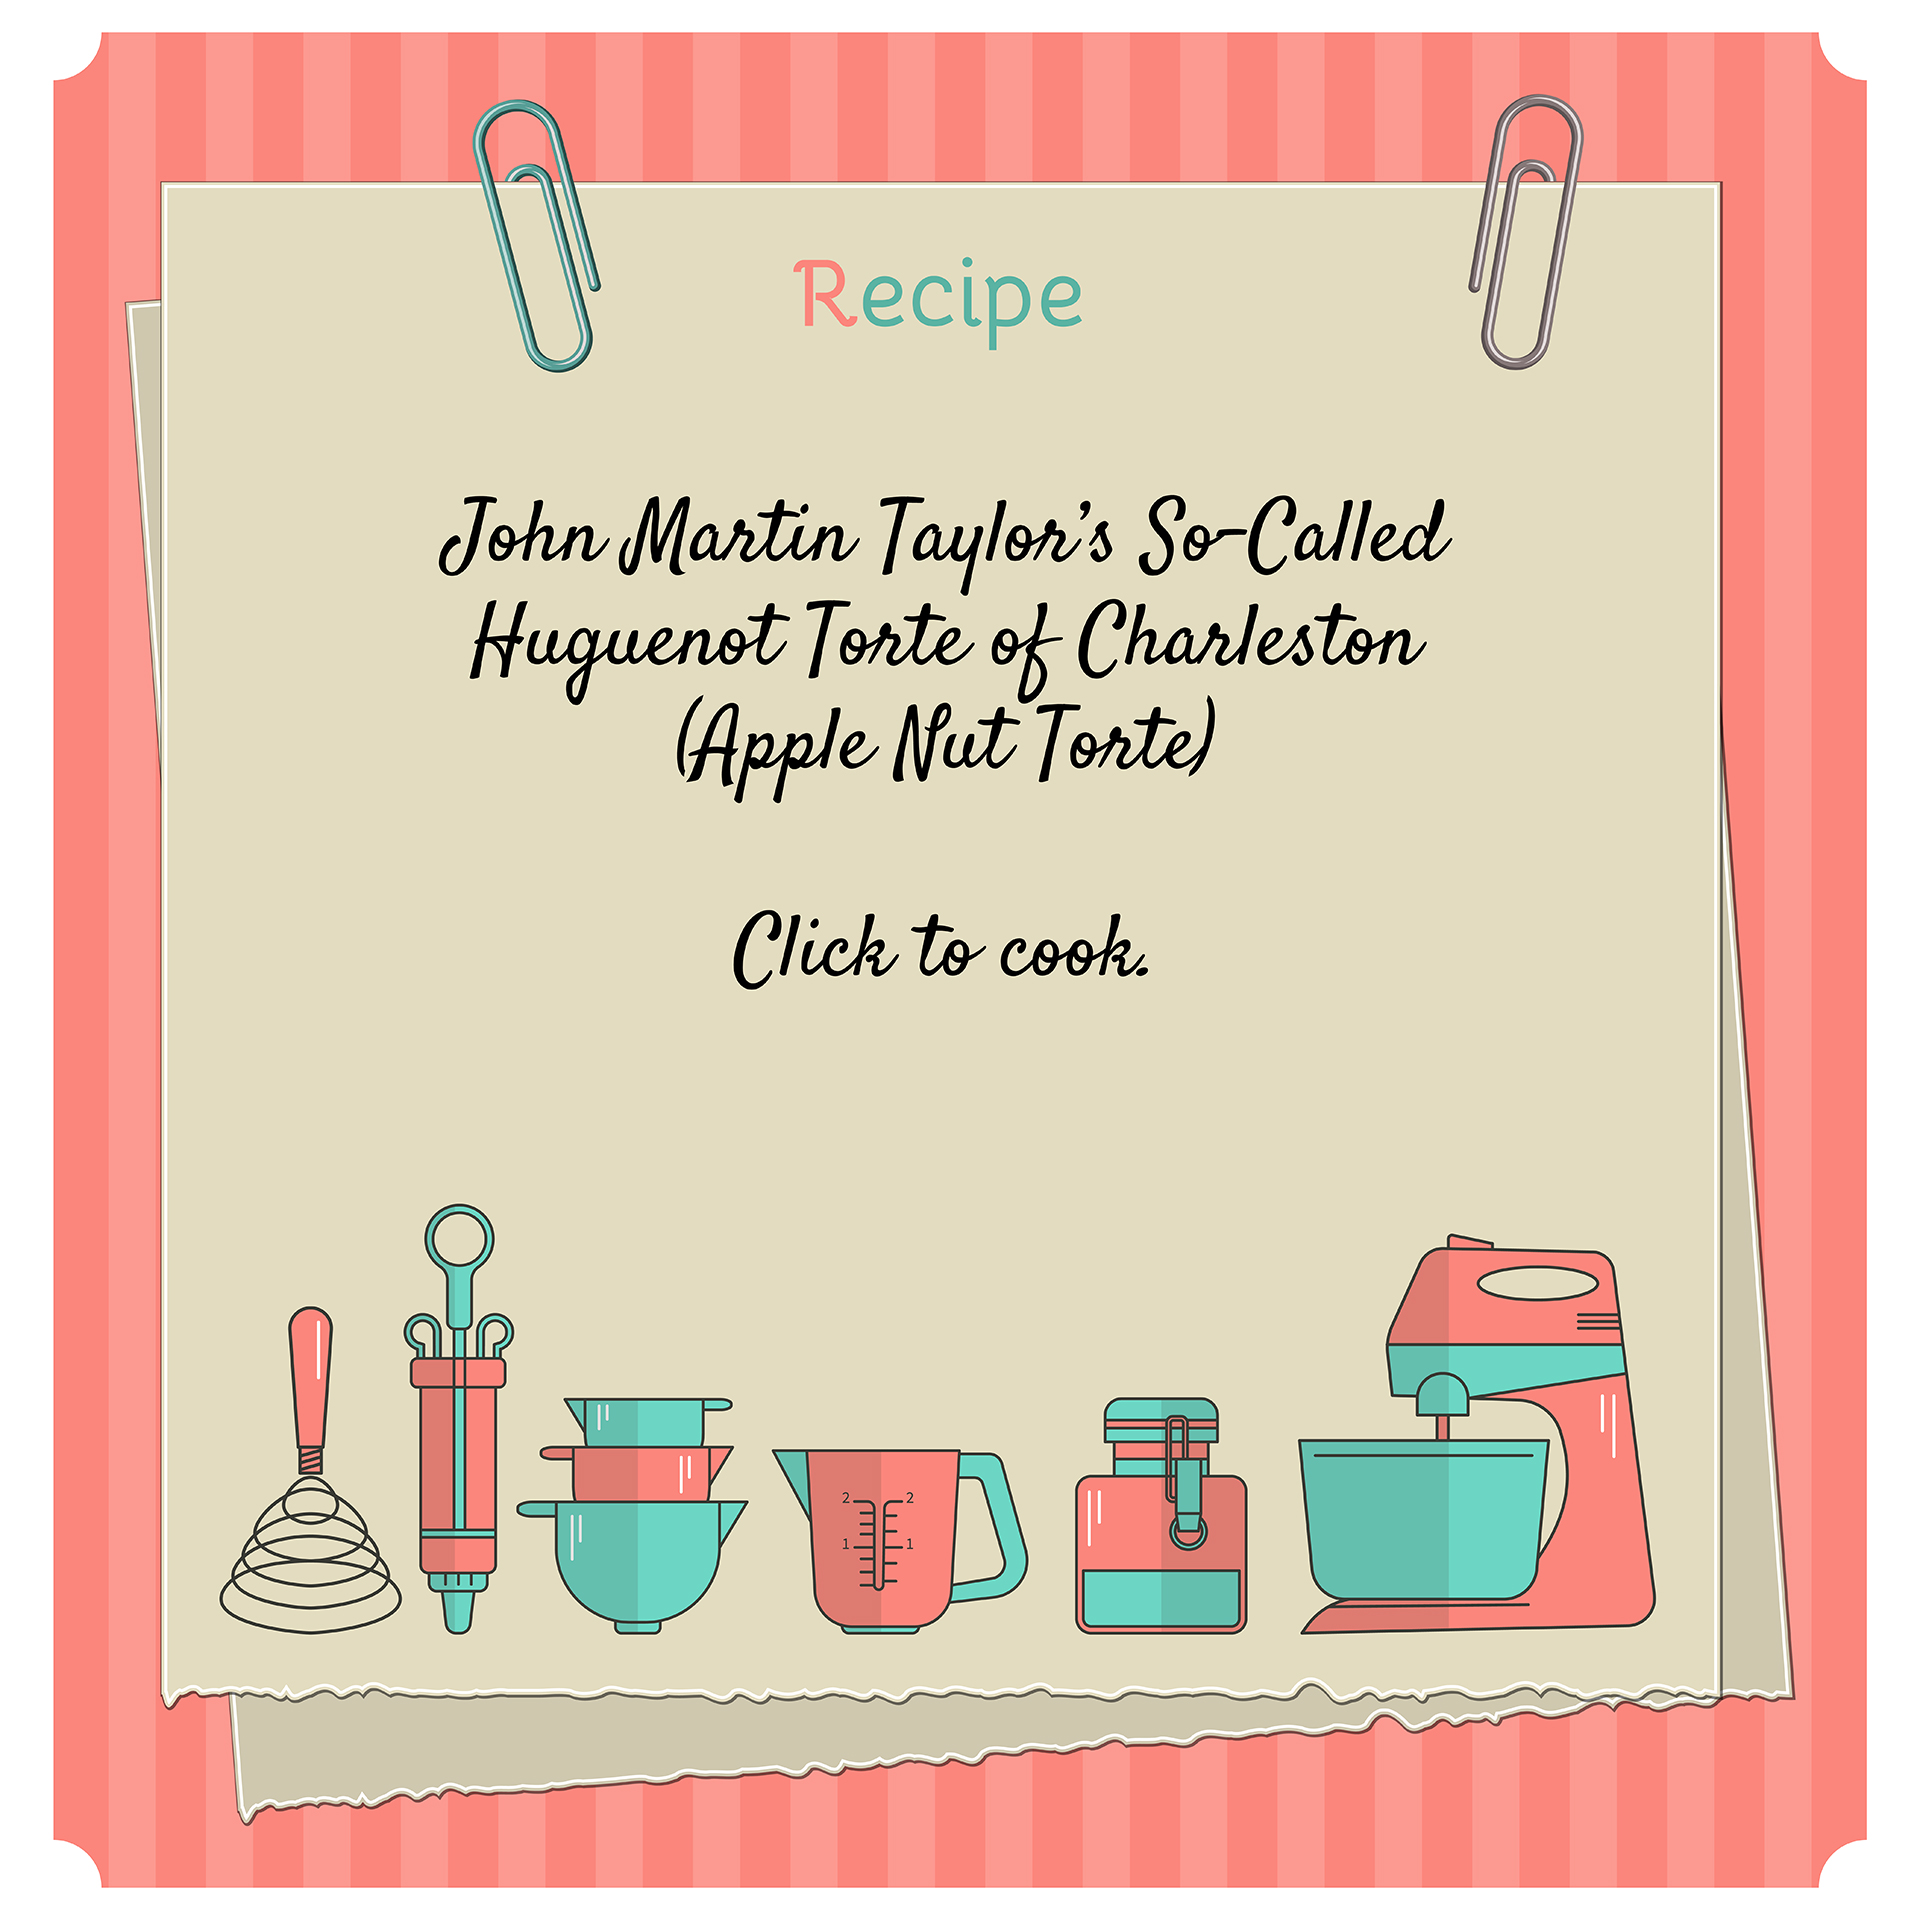 CONDENSED-Huguenot-Torte-recipe-John-Martin-Taylor